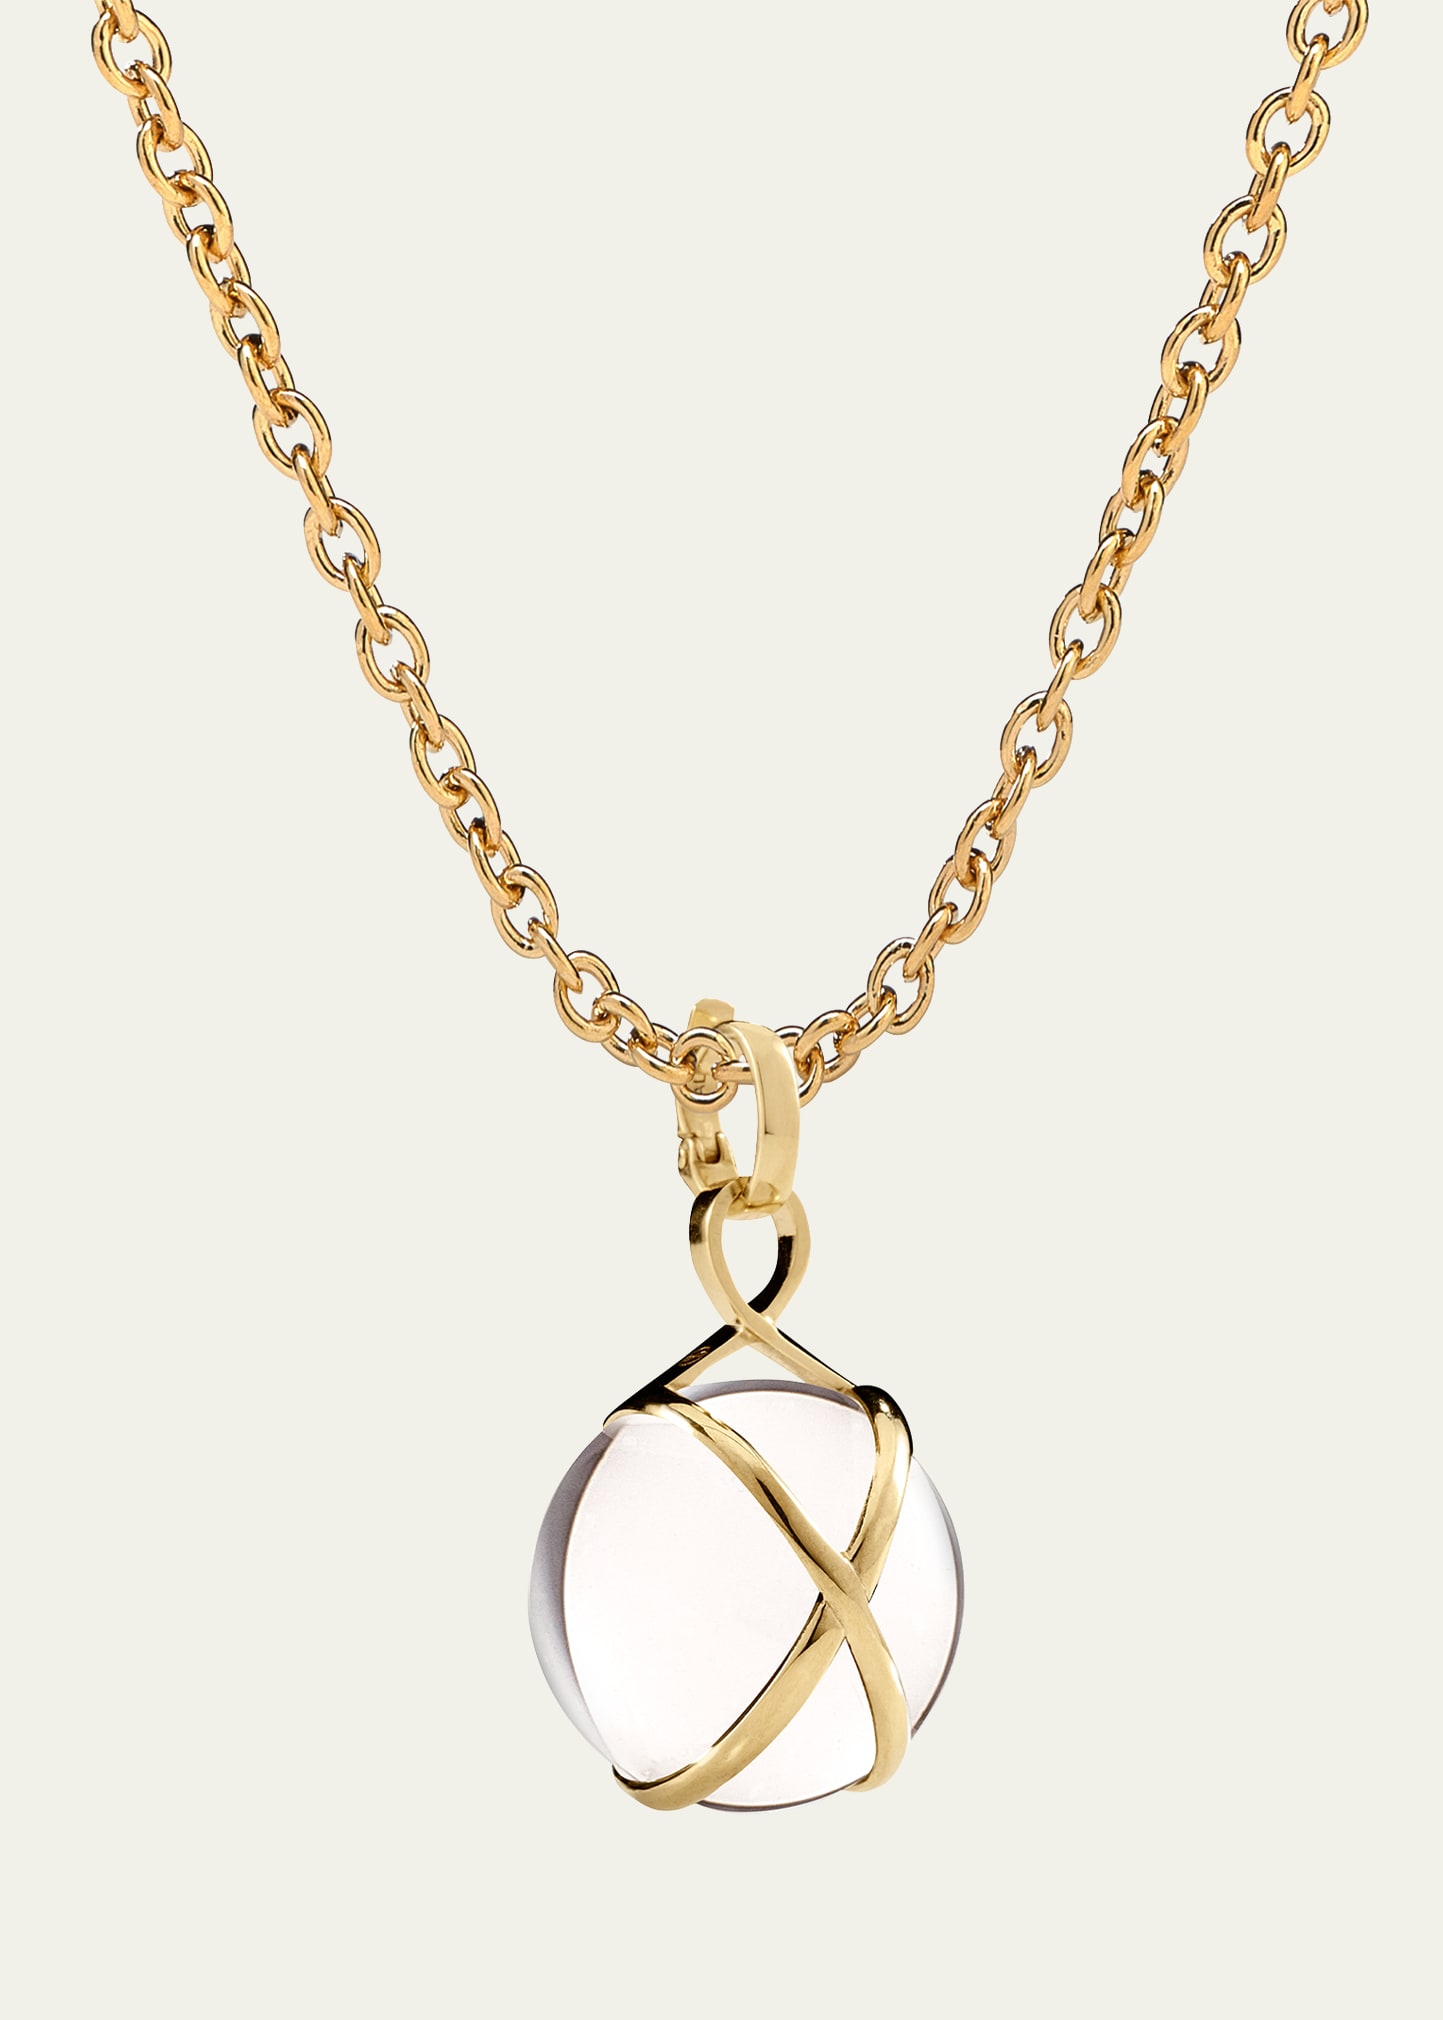 Prisma 18k Gold & Crystal Quartz Large Pendant Luxe Chain Necklace